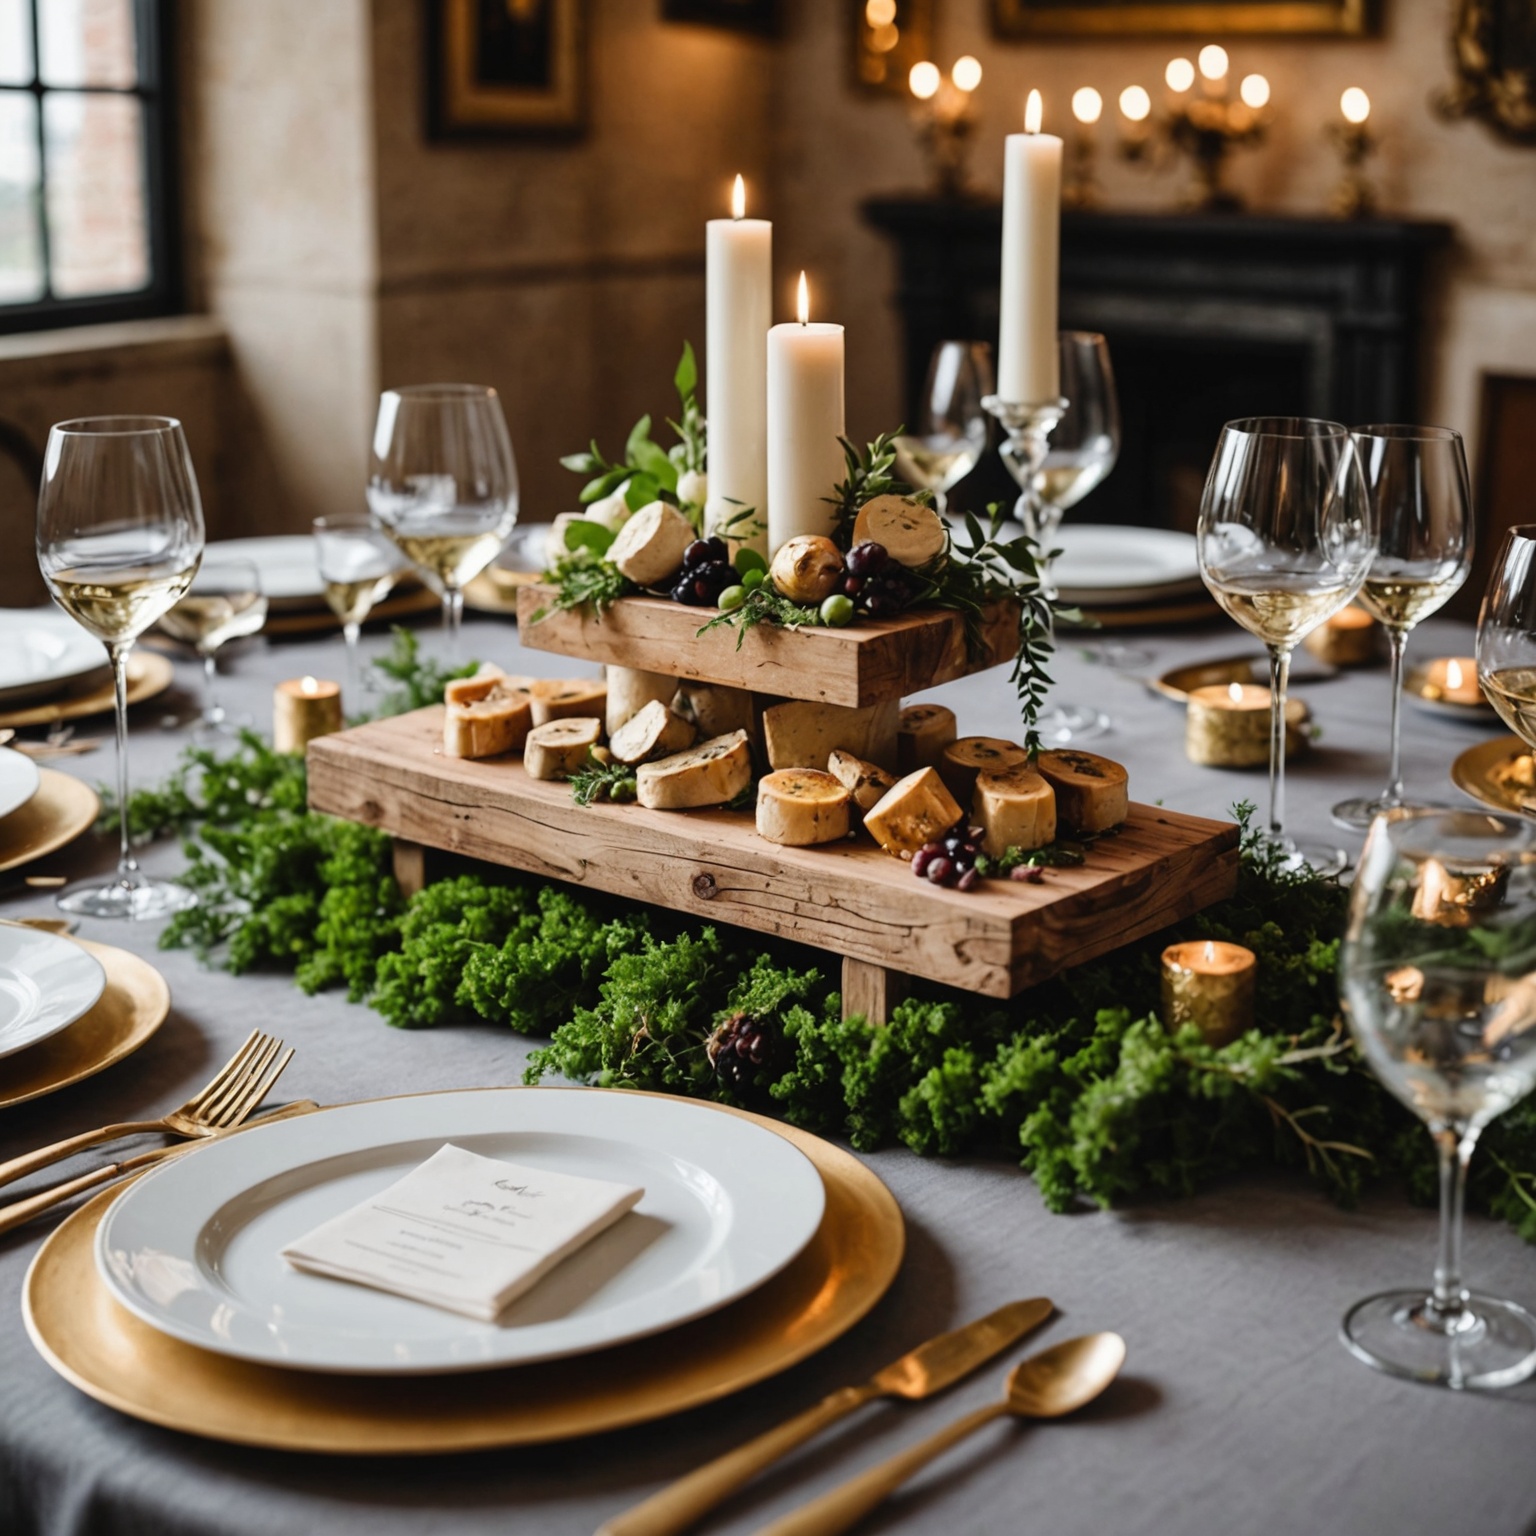 Décoration de Mariage: Astuces Inédites pour Sublimer les Tables avec du Foie Gras